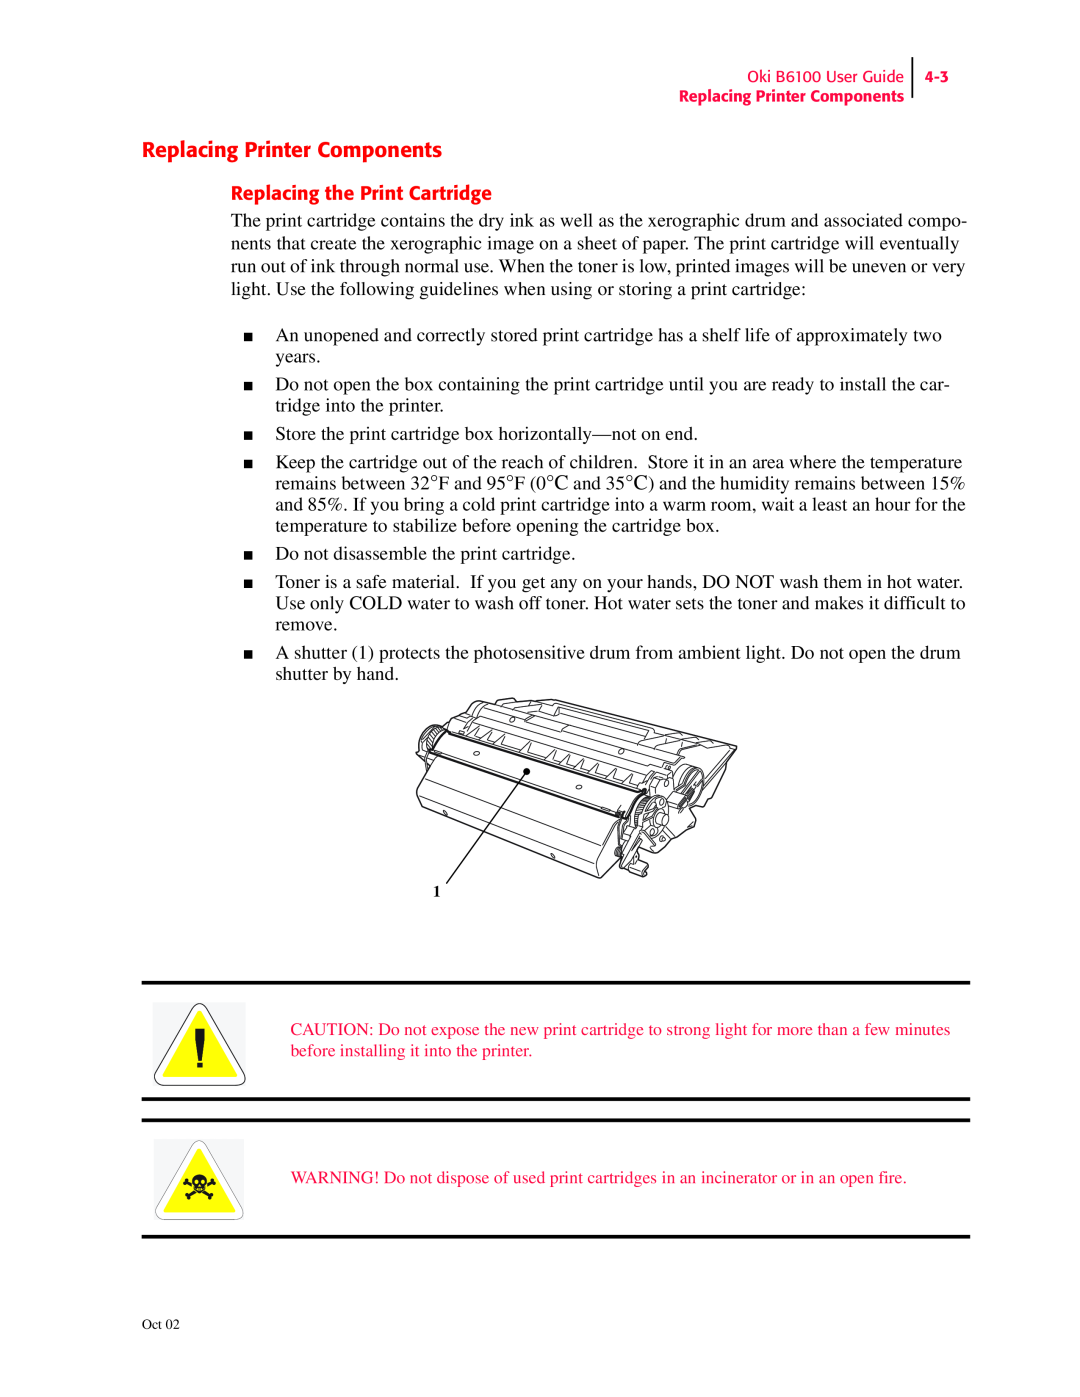 Oki 6100 manual Replacing Printer Components, Replacing the Print Cartridge 